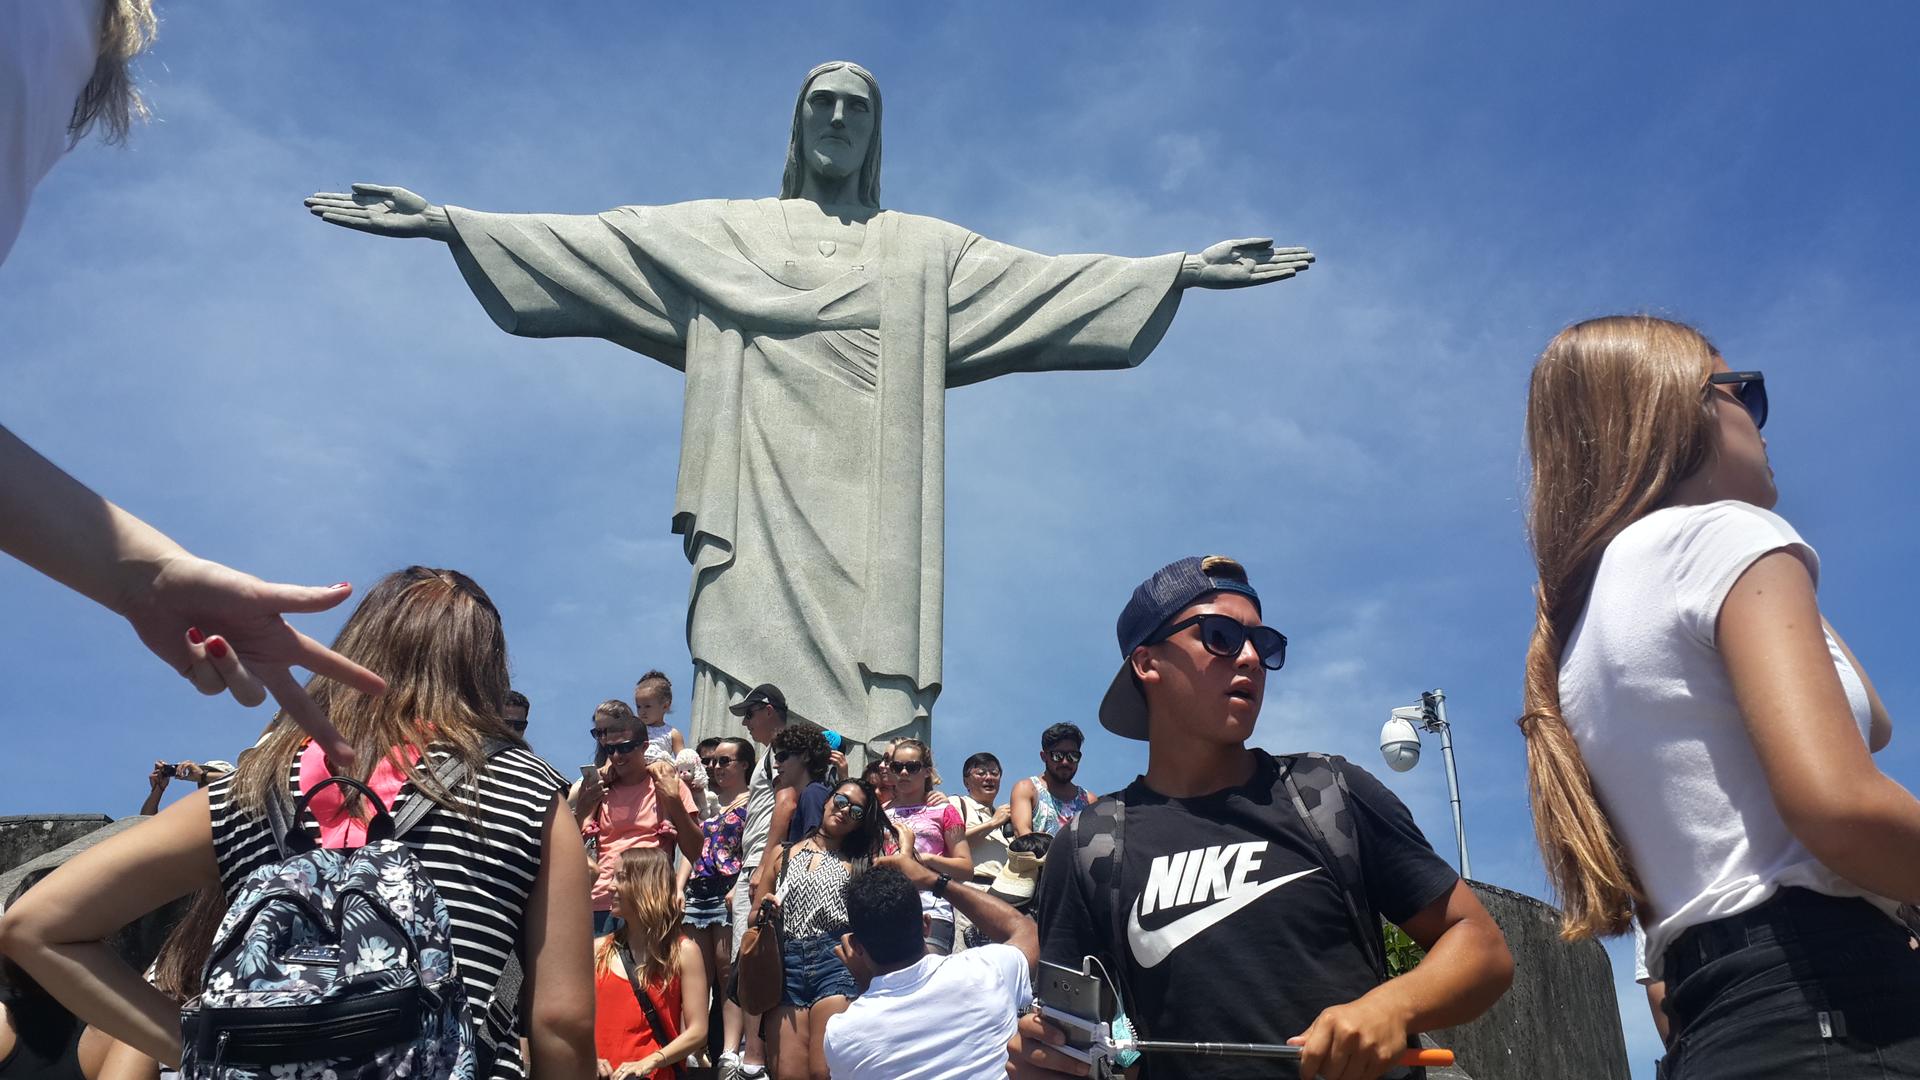 Väenpaljoutta Jeesus-patsaalla Rio de Janeirossa. Patsaasta oli mahdotonta saada hyvää kuvaa.